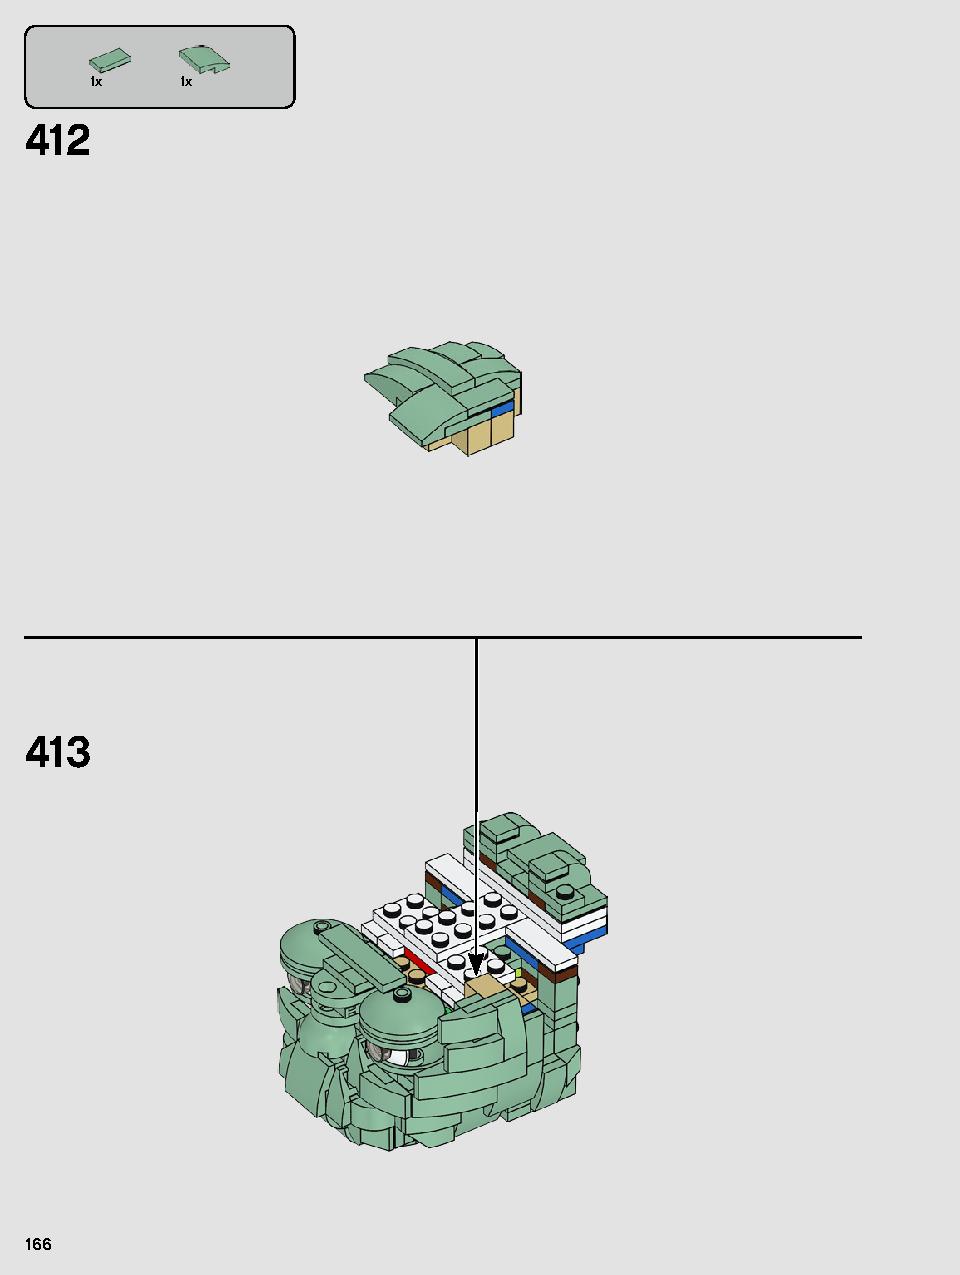 ヨーダ™ 75255 レゴの商品情報 レゴの説明書・組立方法 166 page